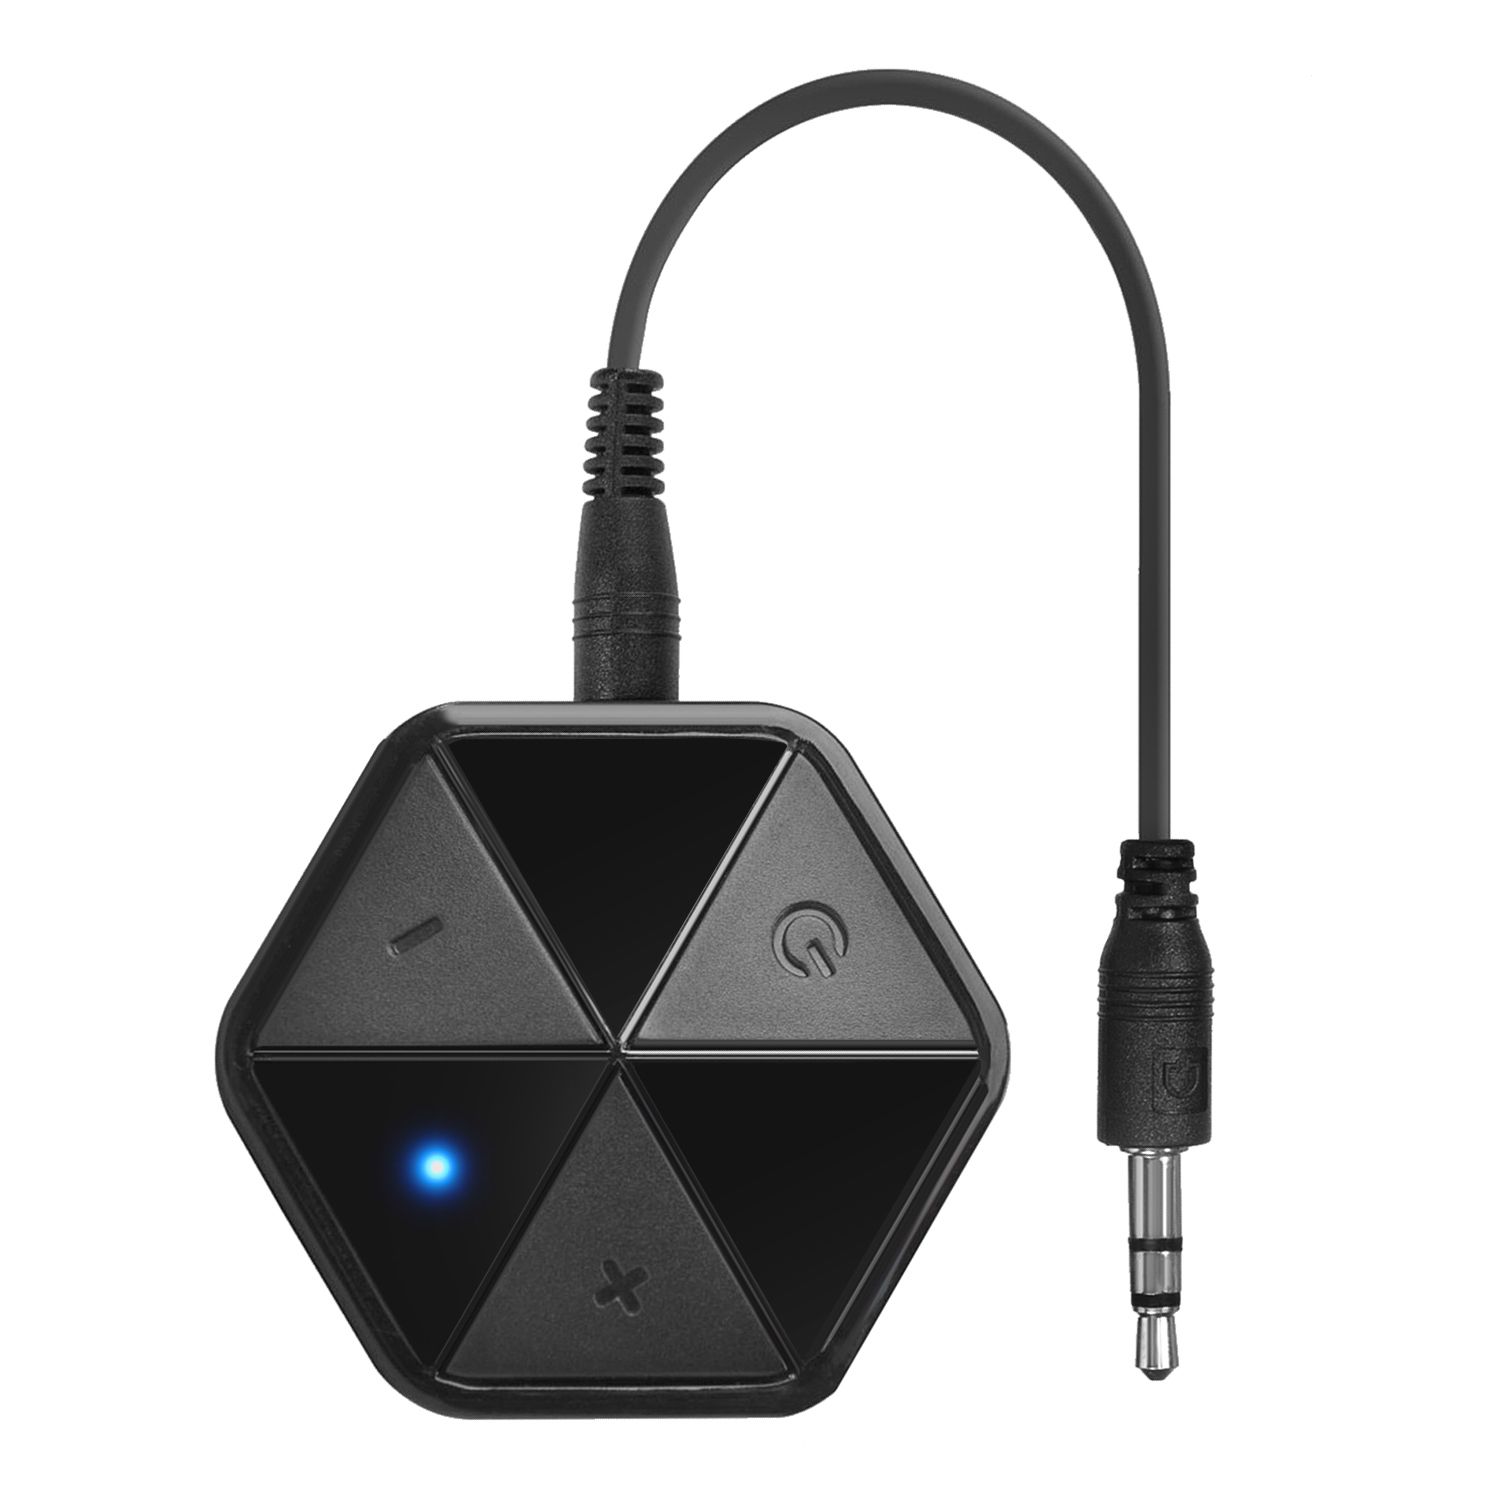 Bluetooth adaptér přijímače s Audiocore AC815 - klipy HSP, HFP, A2DP, AVRCP od ninex.cz